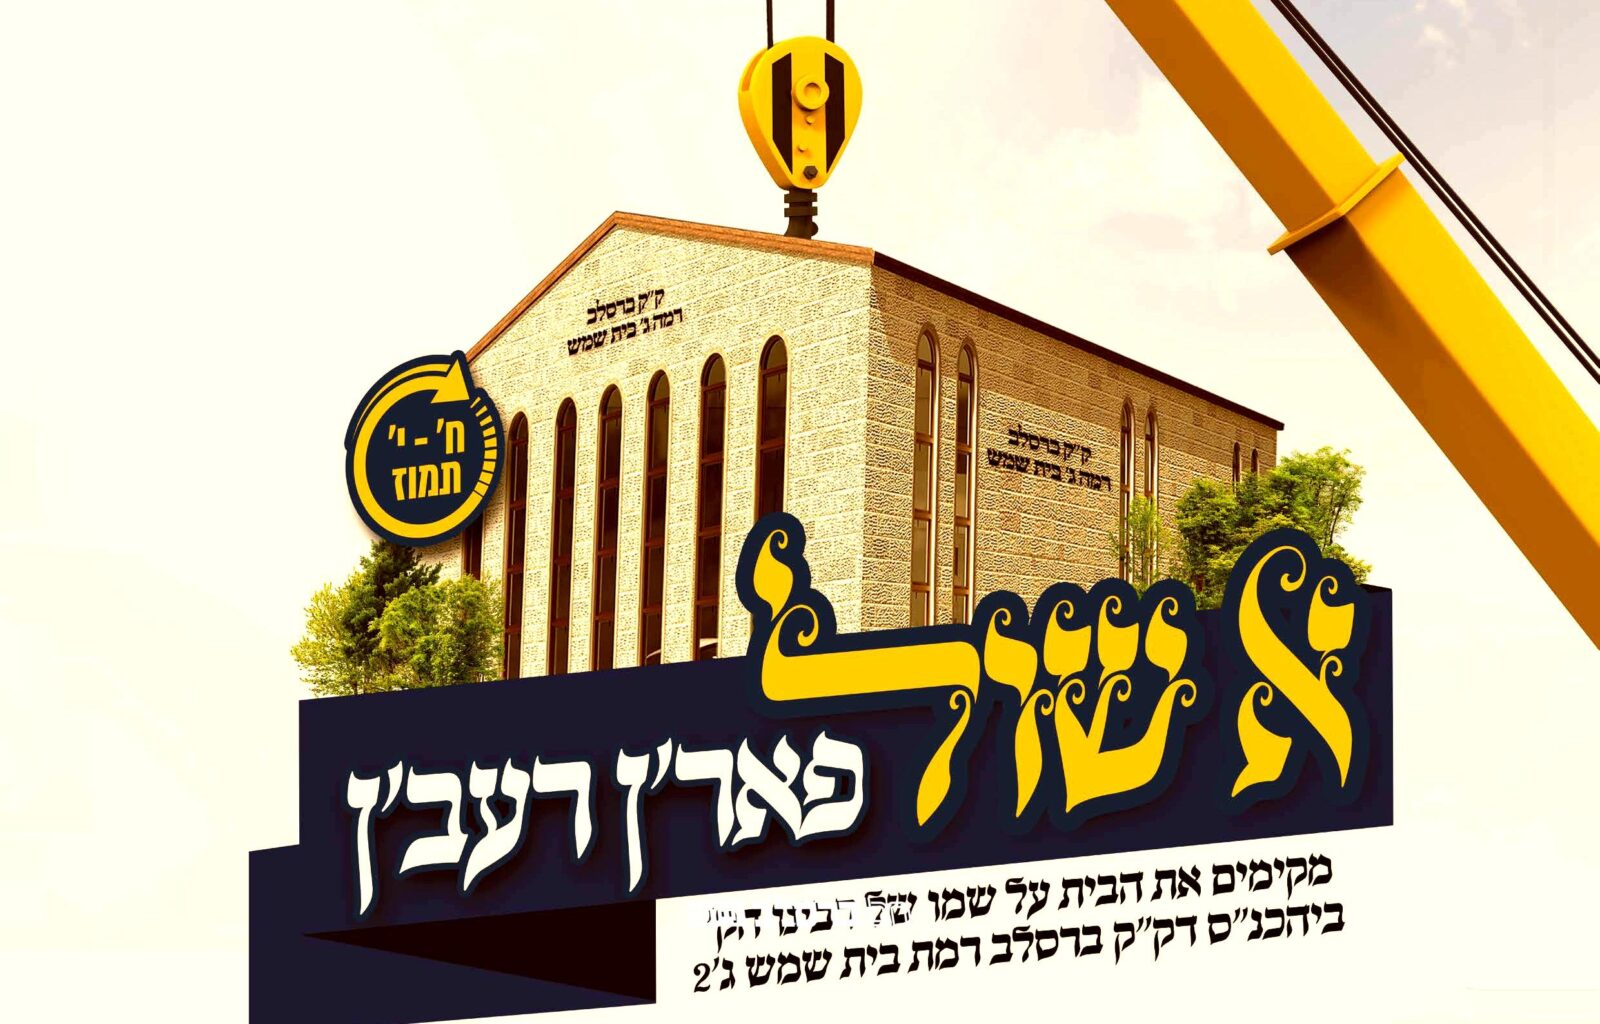 בית שמש: קהילת ברסלב ברמת בית שמש ג' 2 יוצאים בקמפיין לבניית בית הכנסת 'א שול פאר'ן רעב'ן'